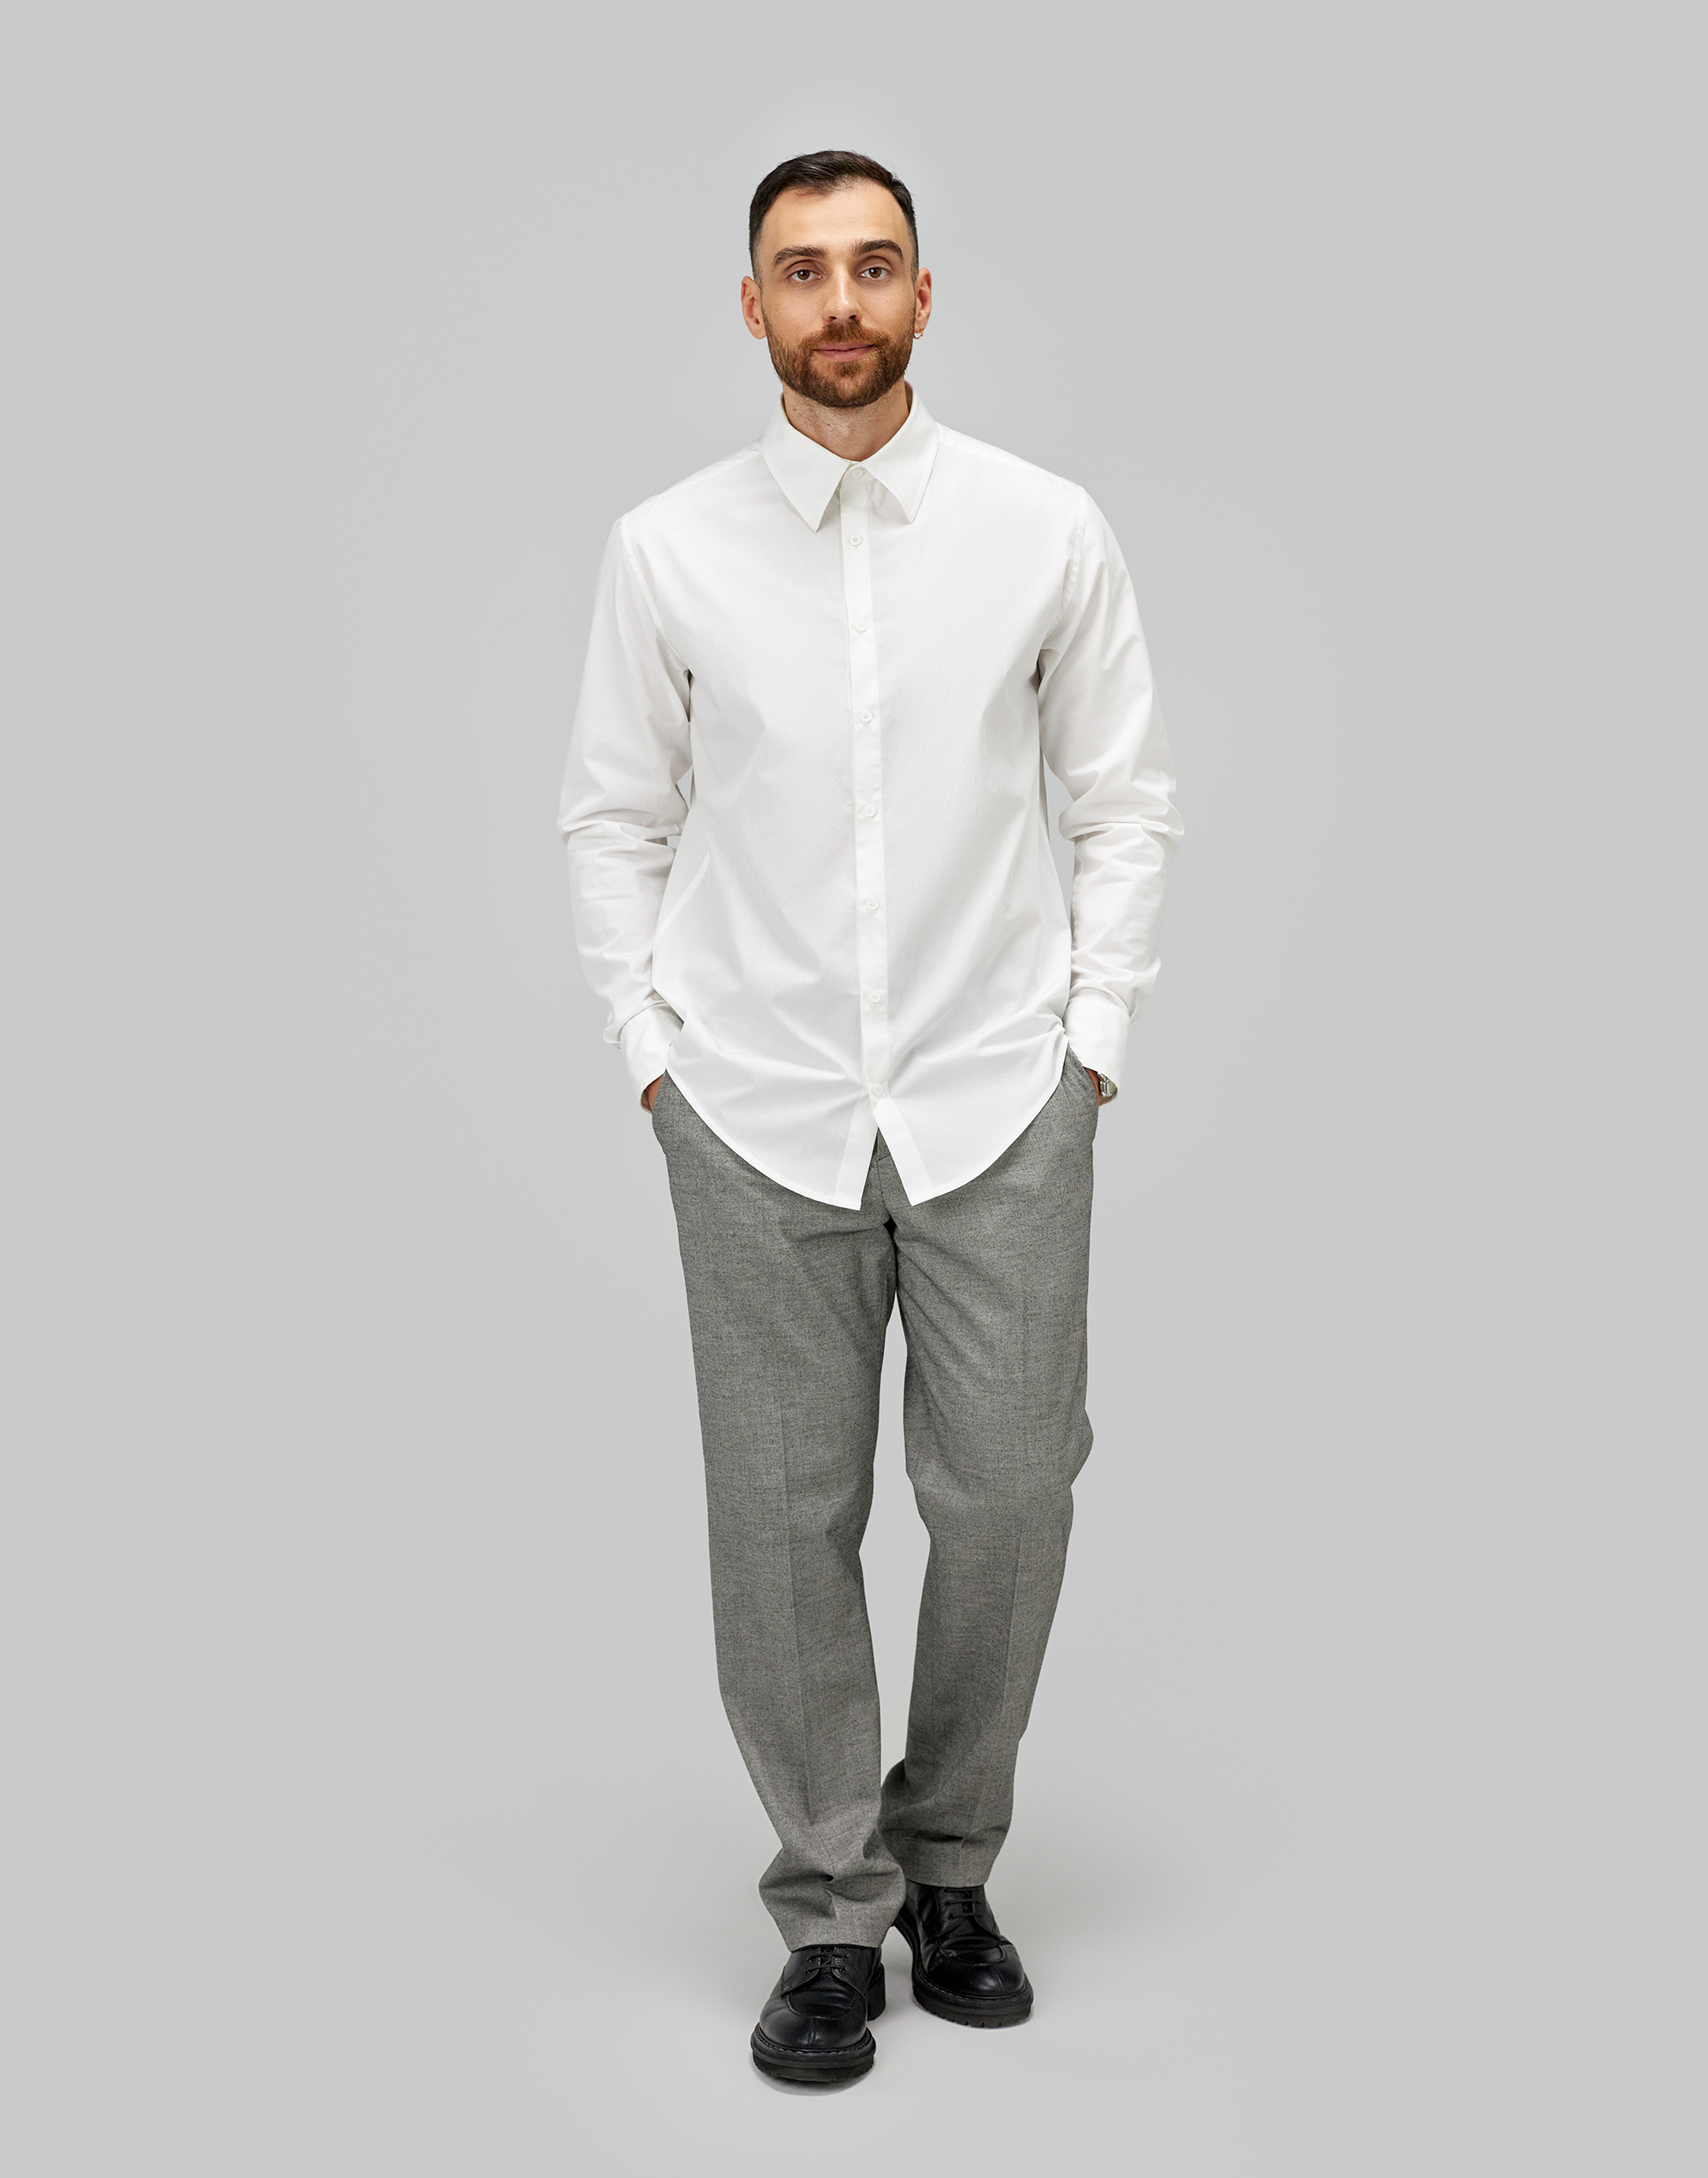 Мужская рубашка, выкройка Grasser №60 – купить онлайн на сайте GRASSER, каталог мужских выкроек